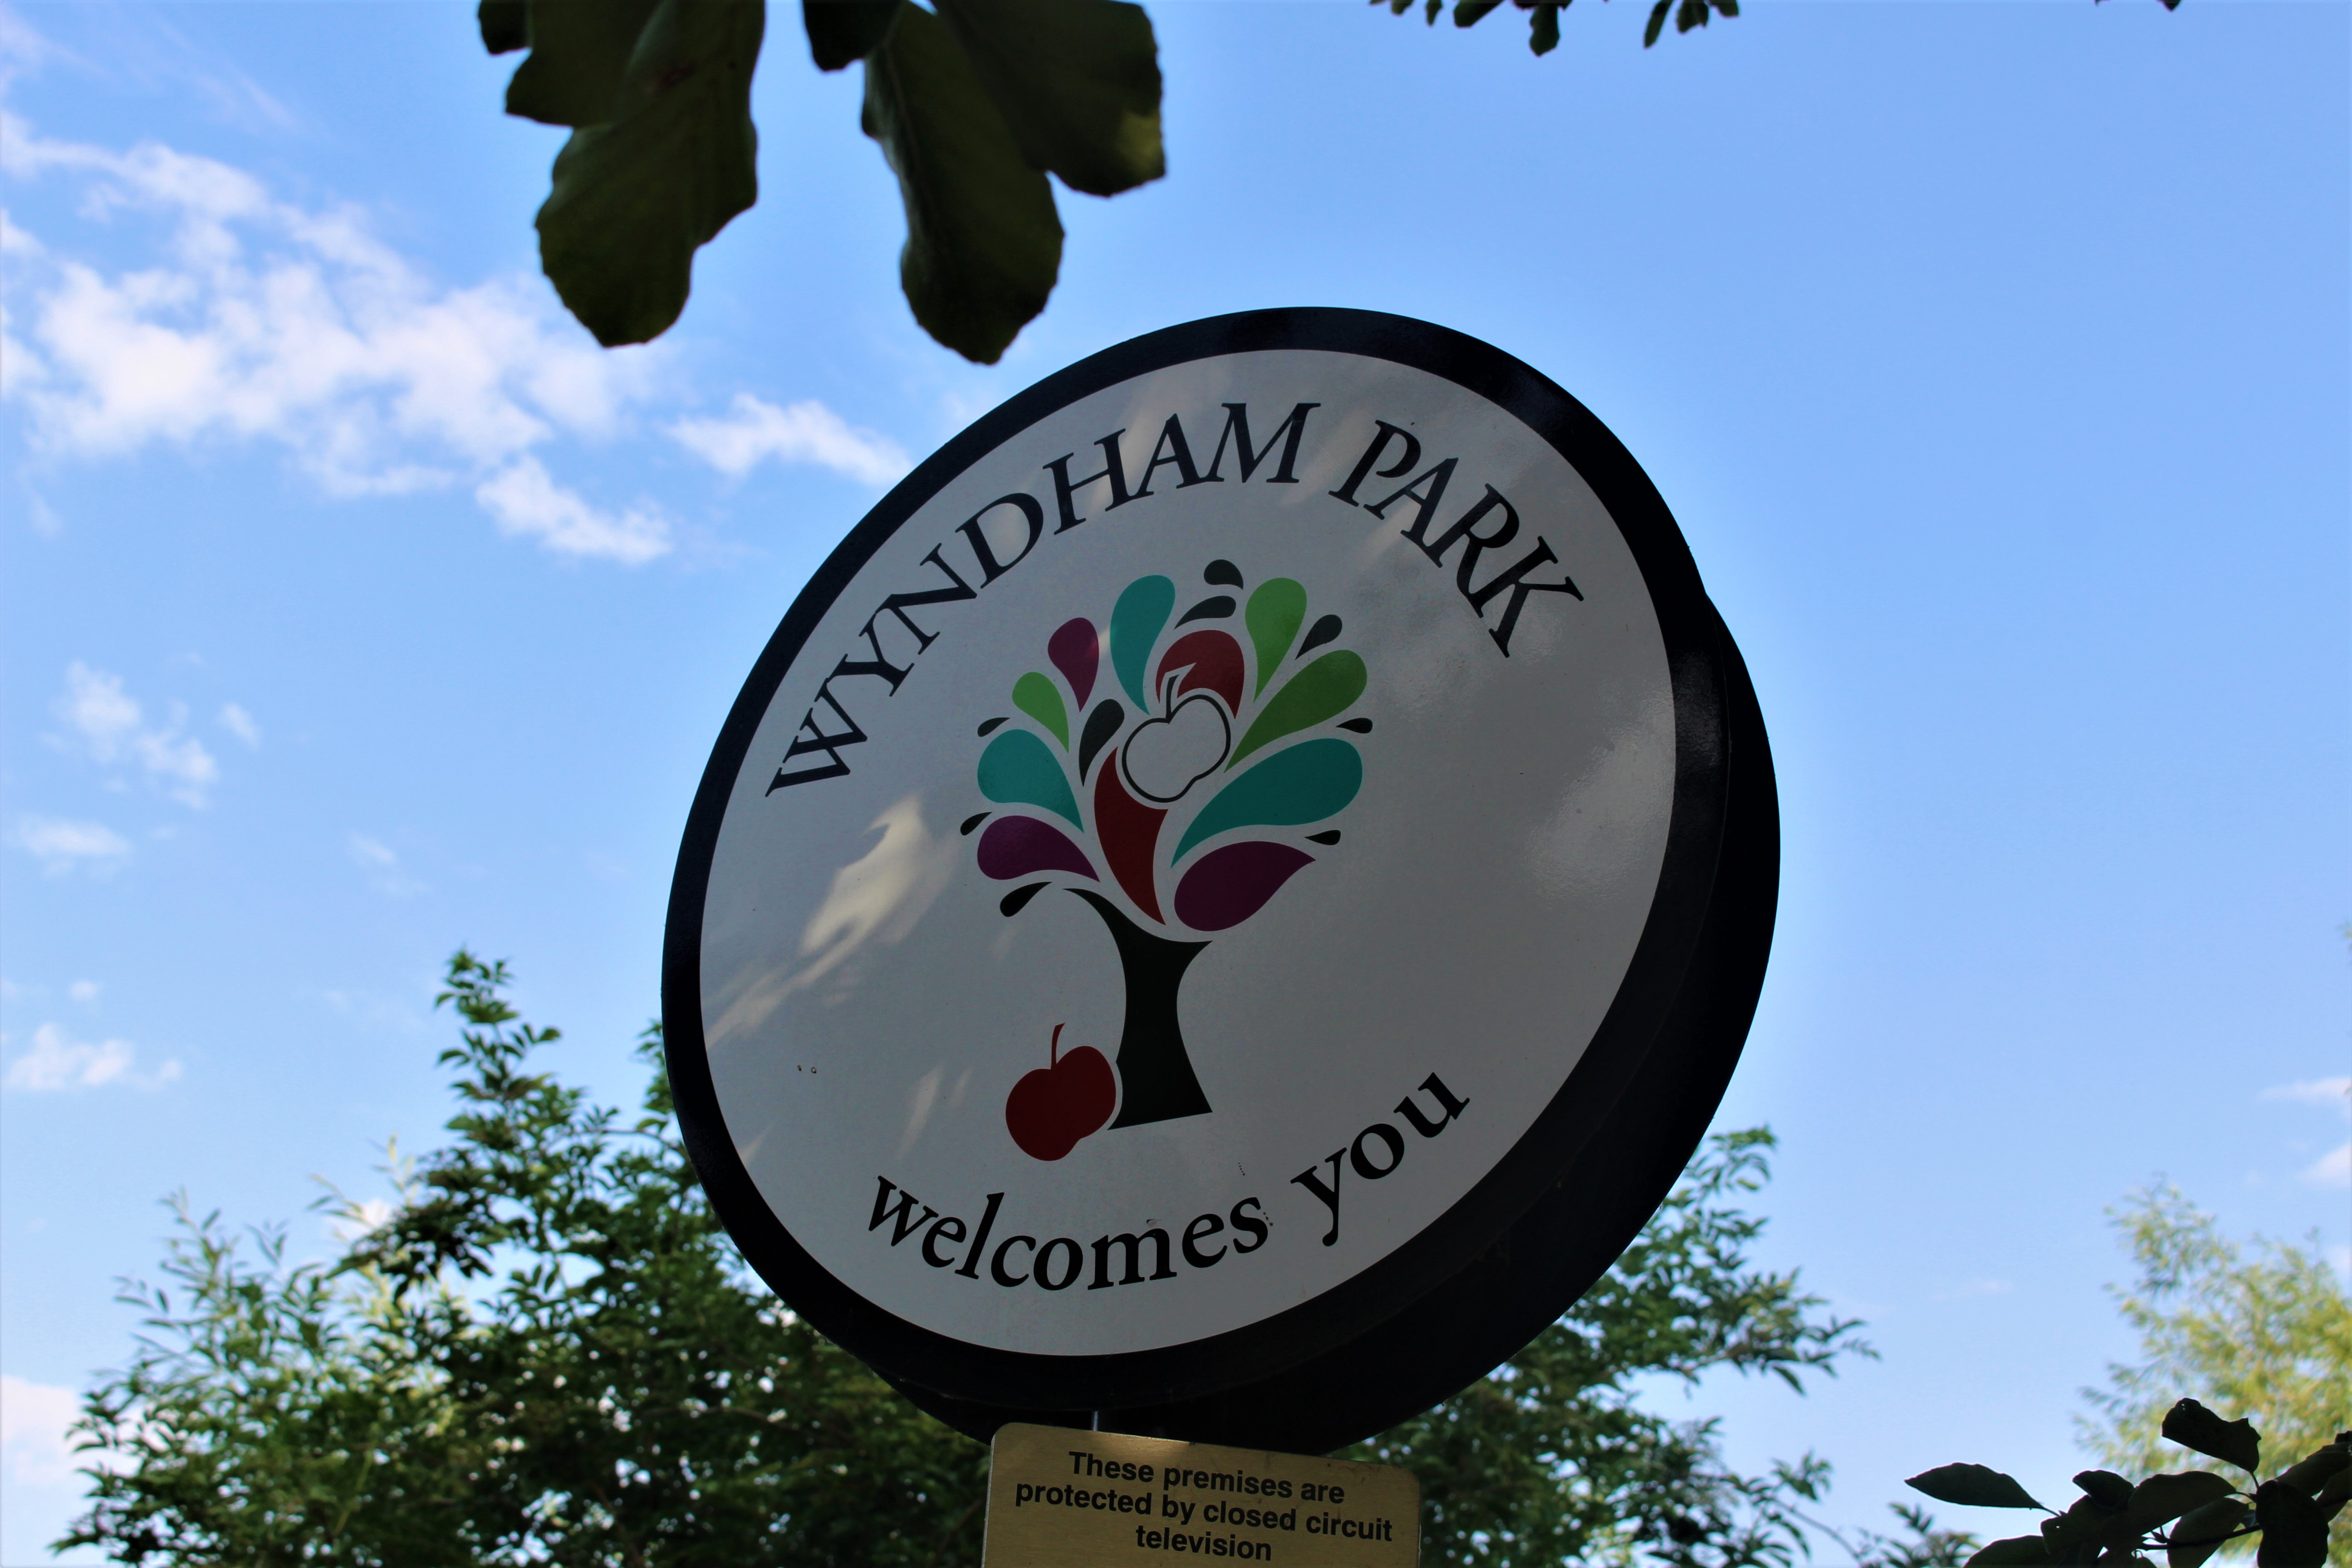 Wyndham Park entrance sign